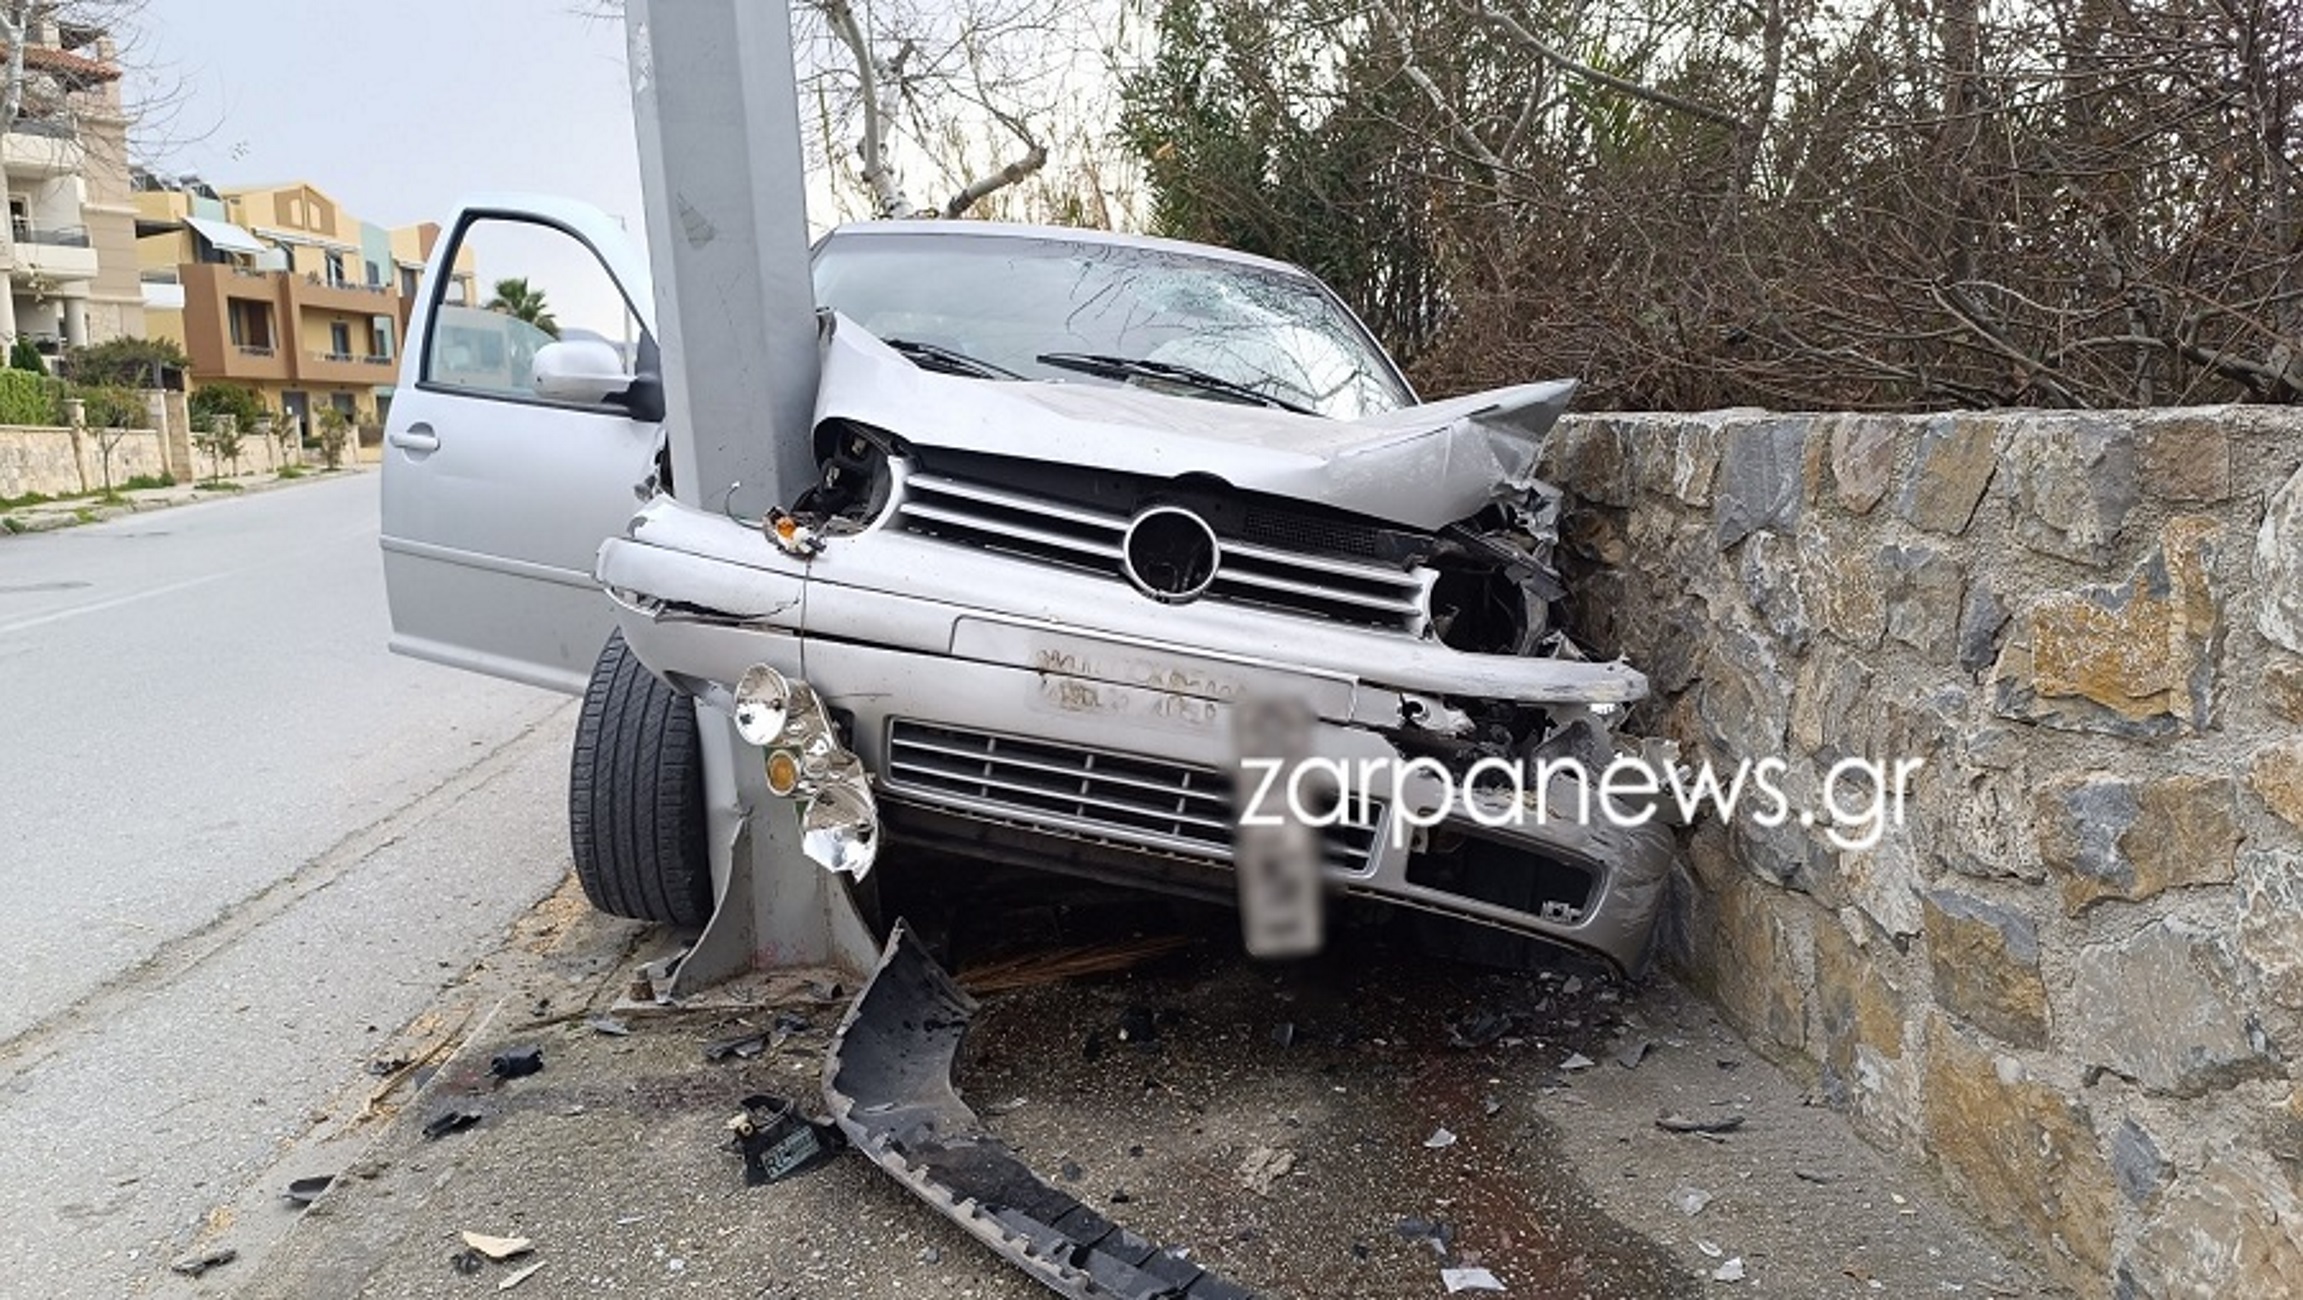 Χανιά: Αυτοκίνητο «καρφώθηκε» και διαλύθηκε σε κολώνα φωτισμού μετά από τροχαίο